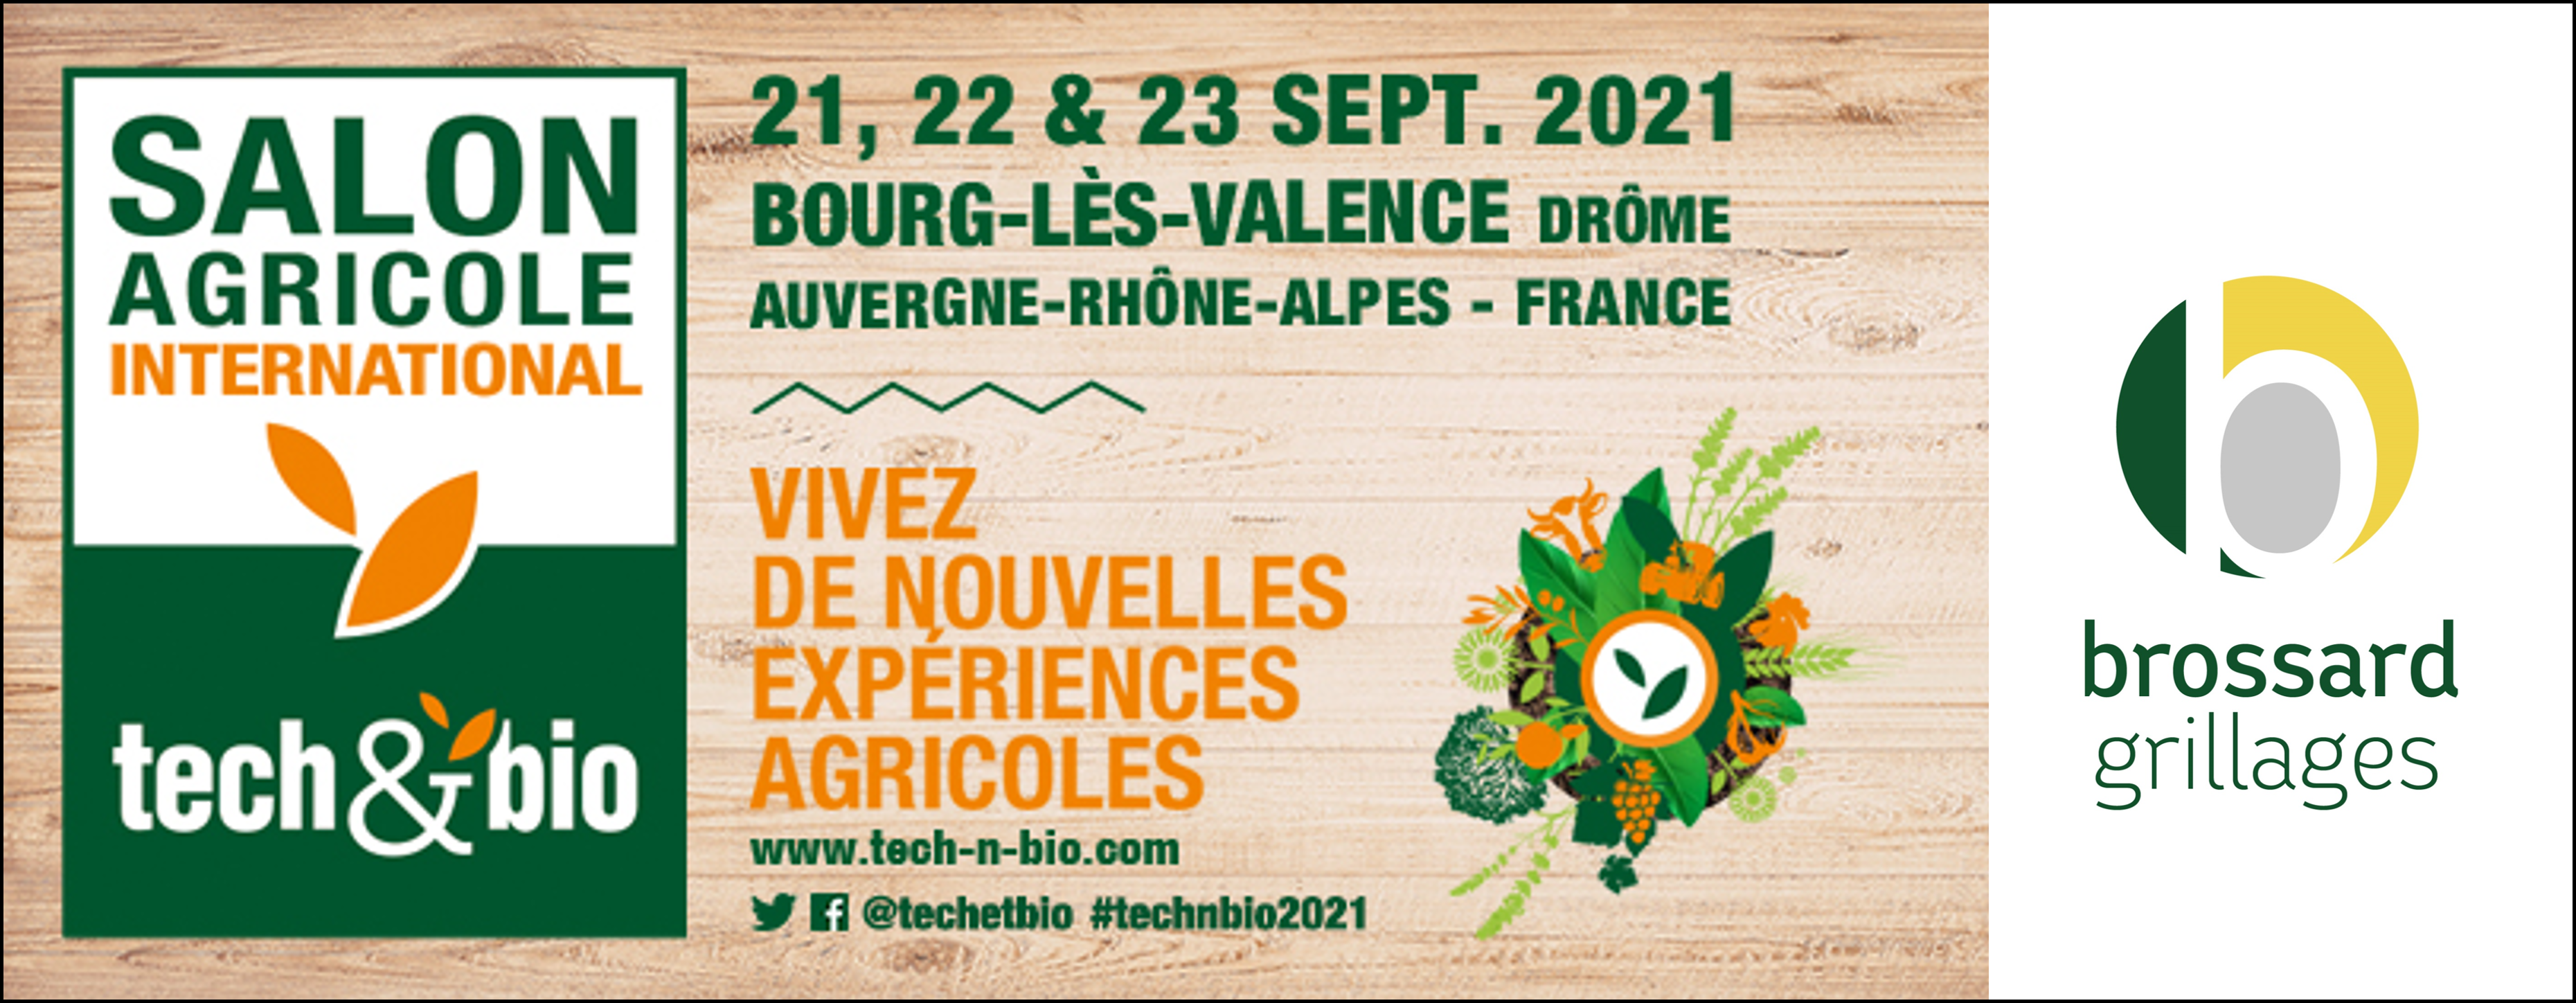 Grillages Brossard sur le salon Tech’n Bio – Du 21 au 23 septembre à Bourg-Lès-Valence